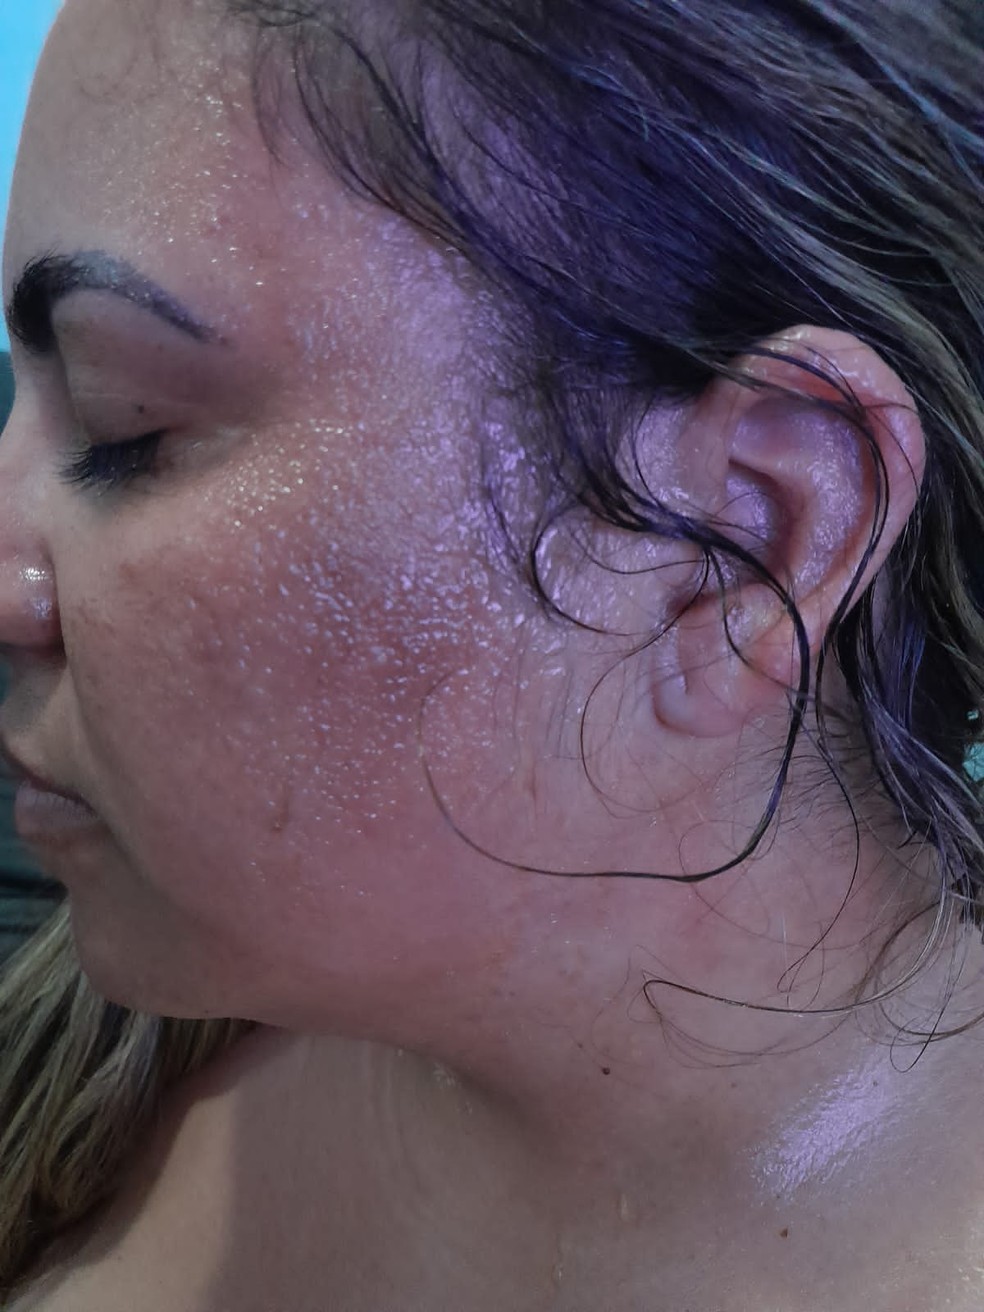 Mulher tem rosto queimado com água quente pelo marido e relata ameaças: "Estou presa em casa" — Foto: Arquivo pessoal